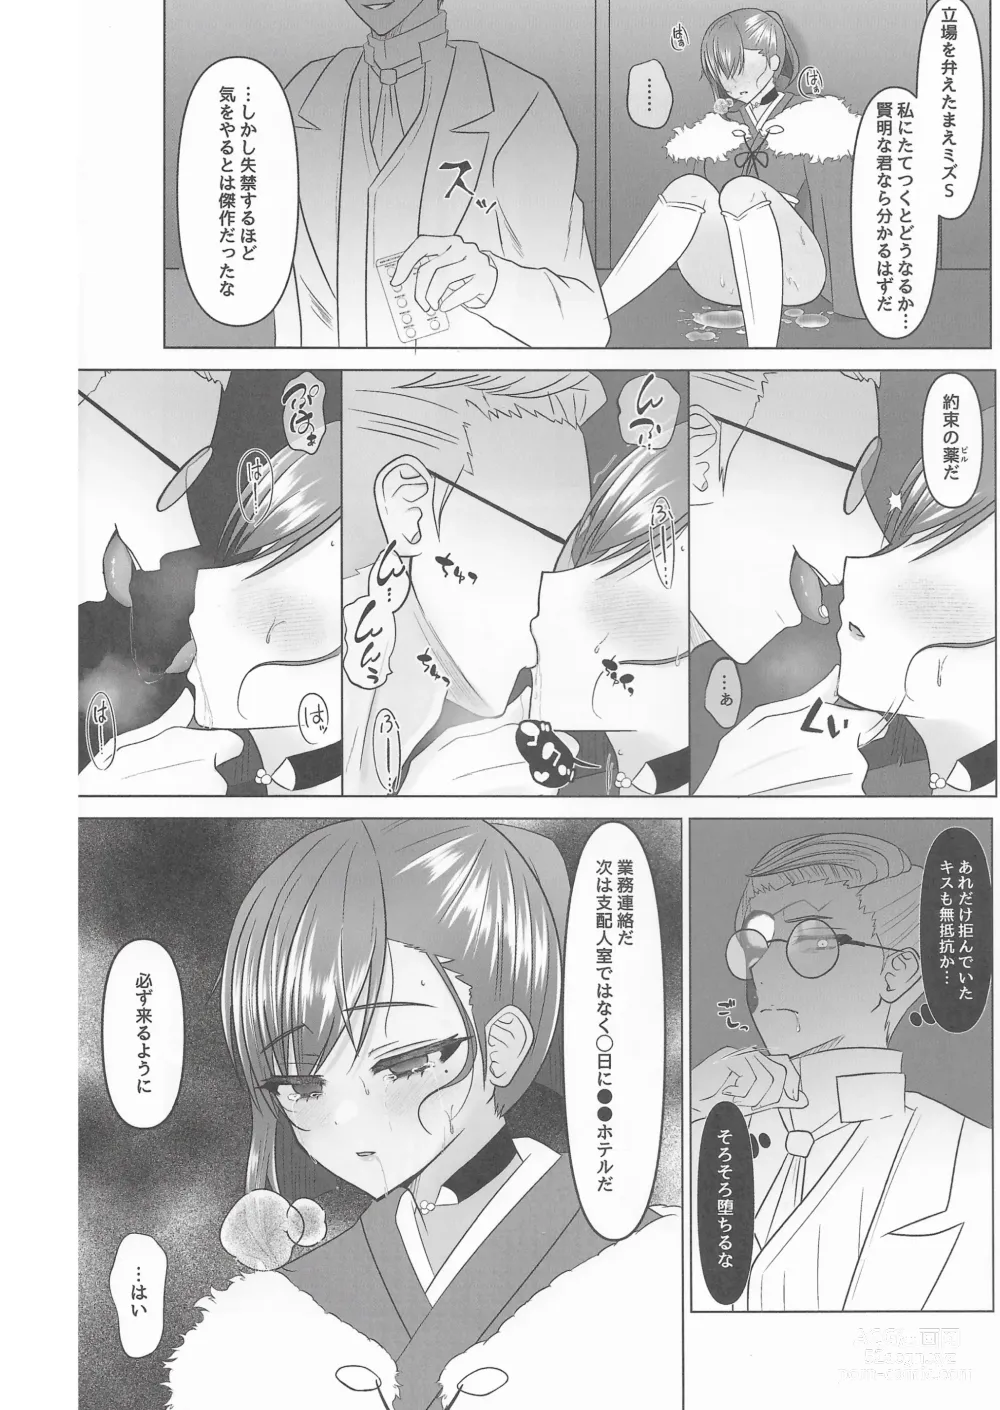 Page 24 of doujinshi Kokkai, Sumire Iro